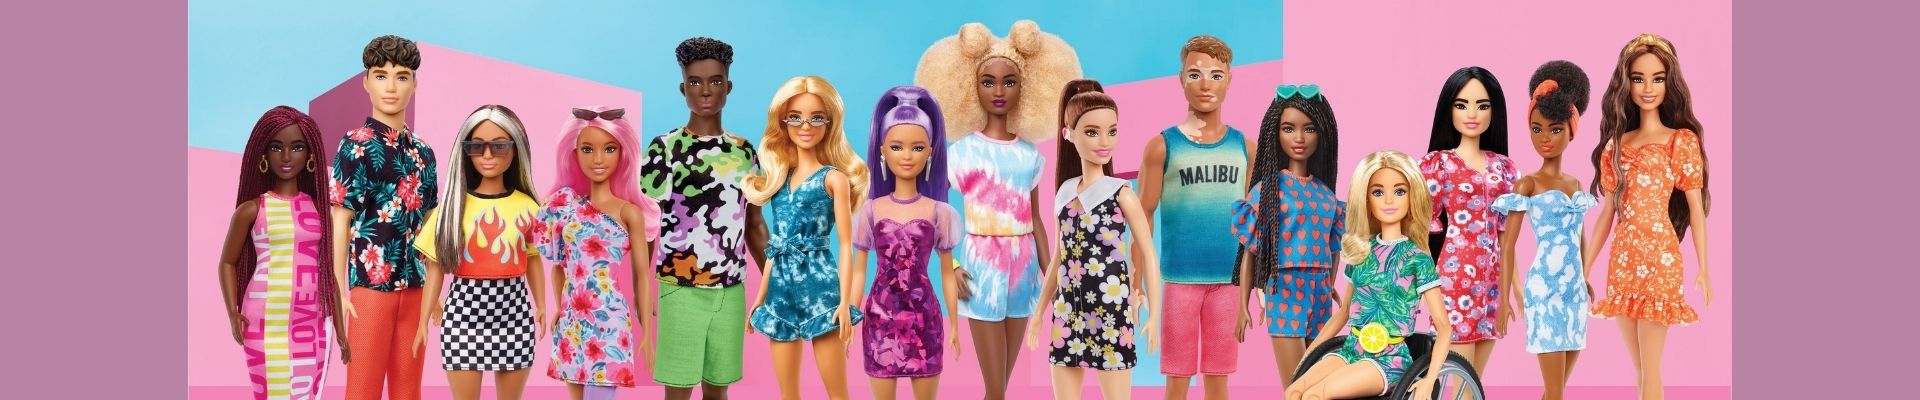 Barbie lança boneca com aparelhos auditivos e Ken com vitiligo